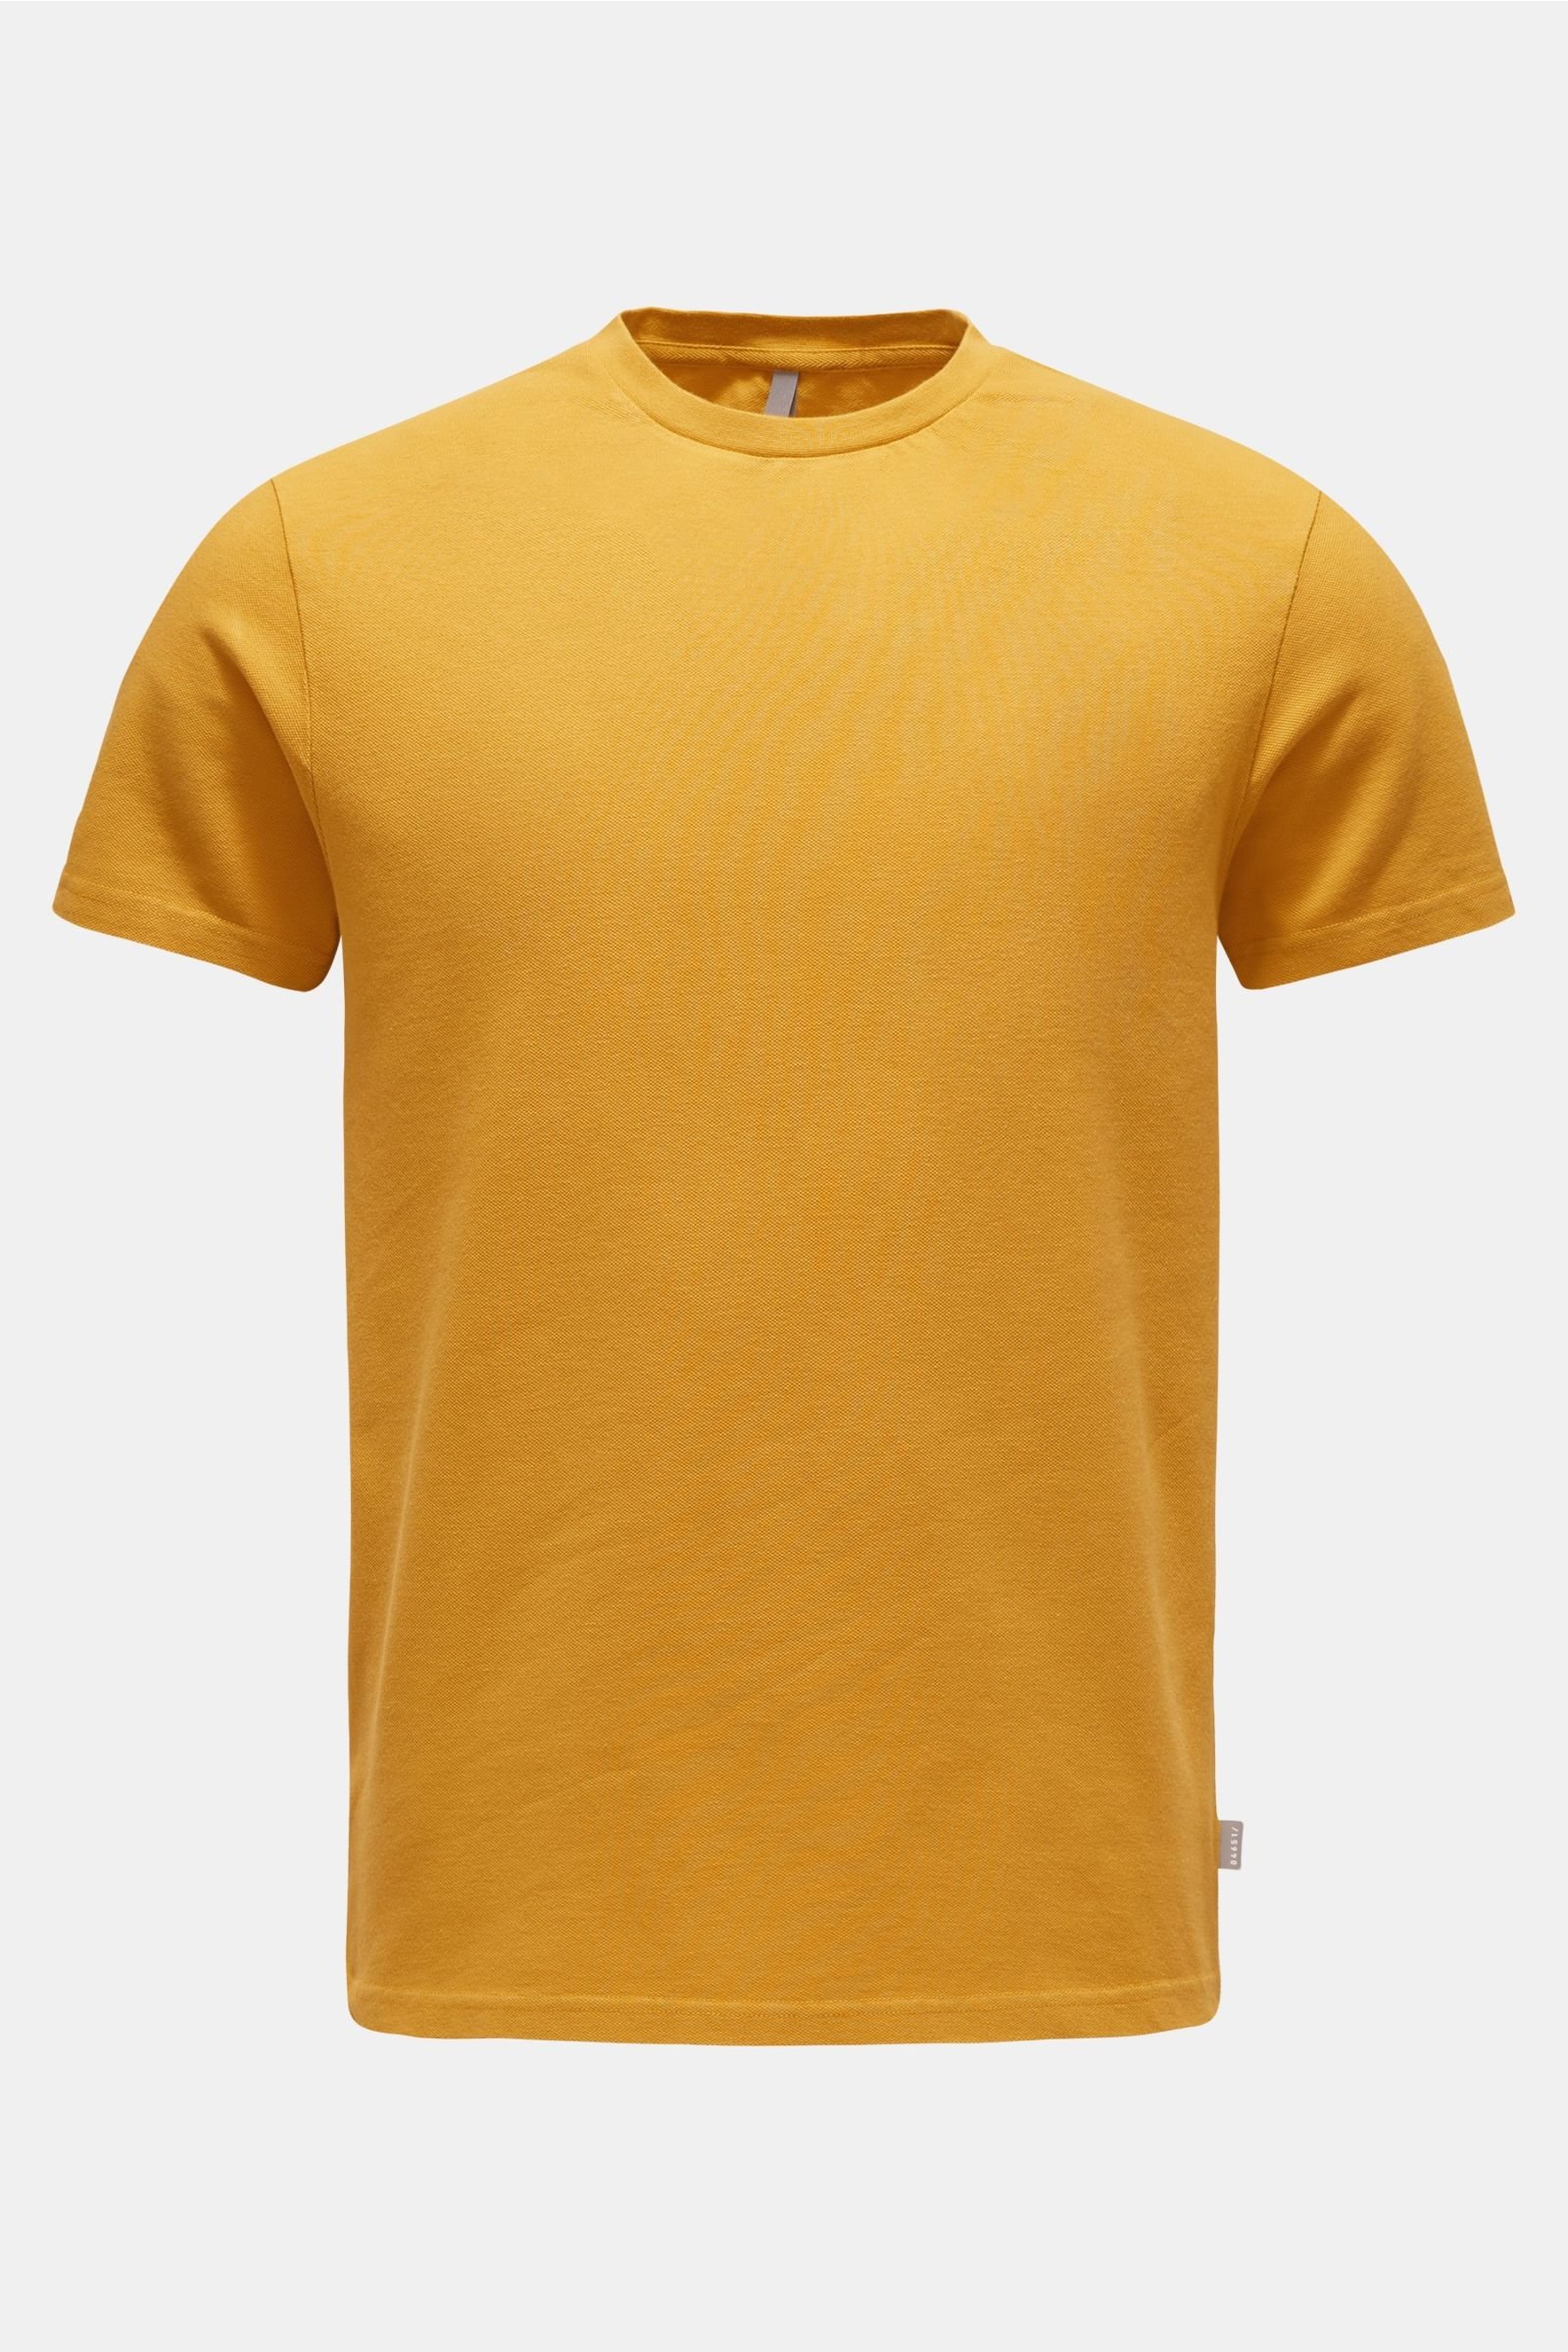 Crew neck T-shirt ochre